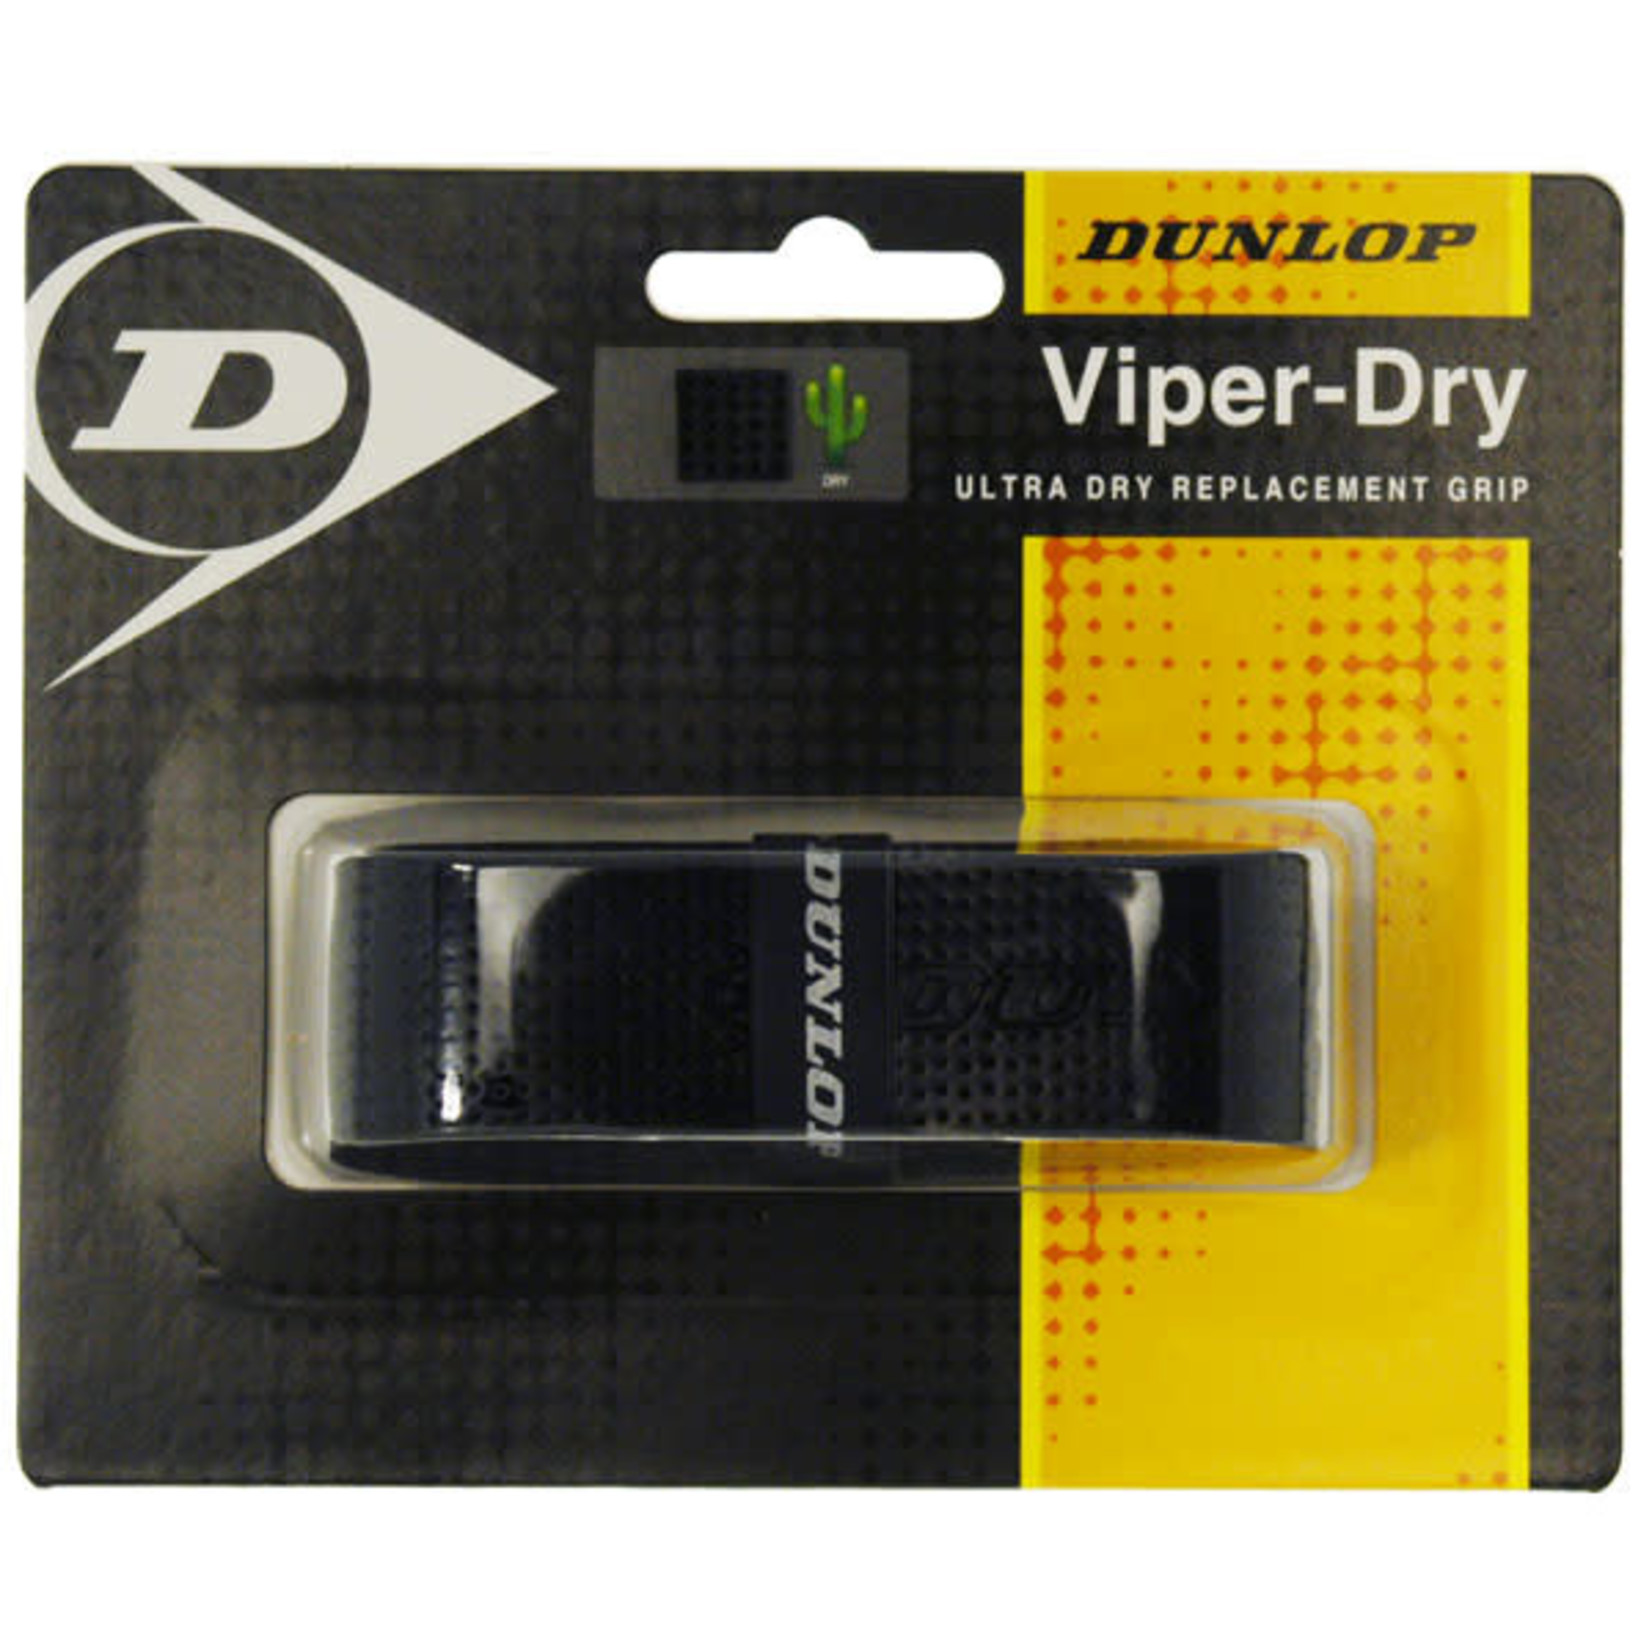 Dunlop Dunlop Viper Dry Replacement Grips